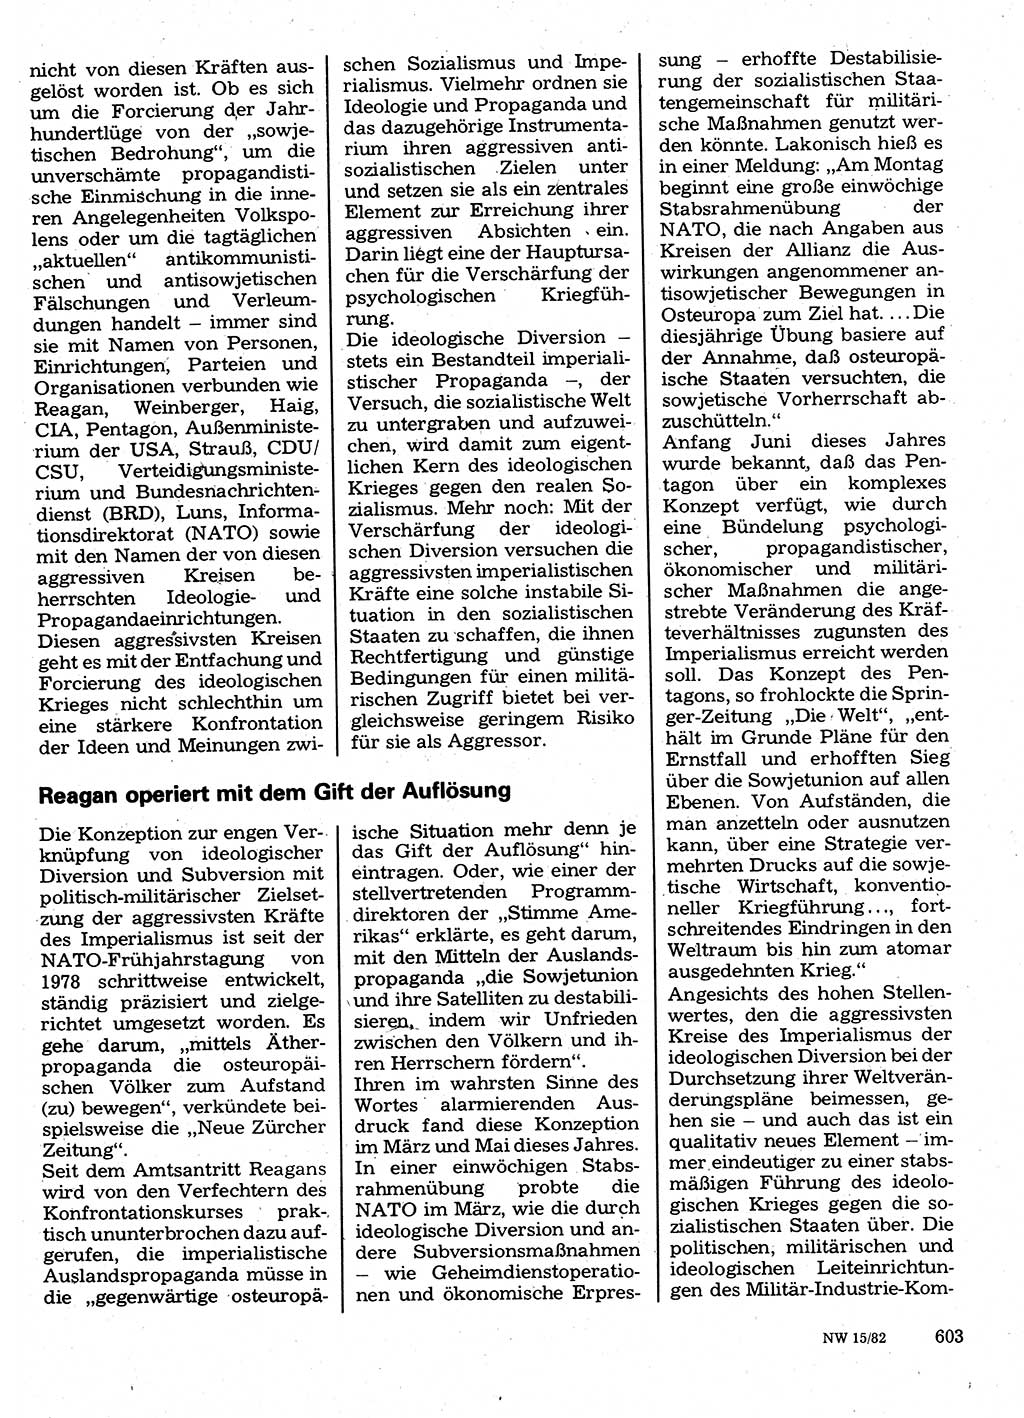 Neuer Weg (NW), Organ des Zentralkomitees (ZK) der SED (Sozialistische Einheitspartei Deutschlands) für Fragen des Parteilebens, 37. Jahrgang [Deutsche Demokratische Republik (DDR)] 1982, Seite 603 (NW ZK SED DDR 1982, S. 603)